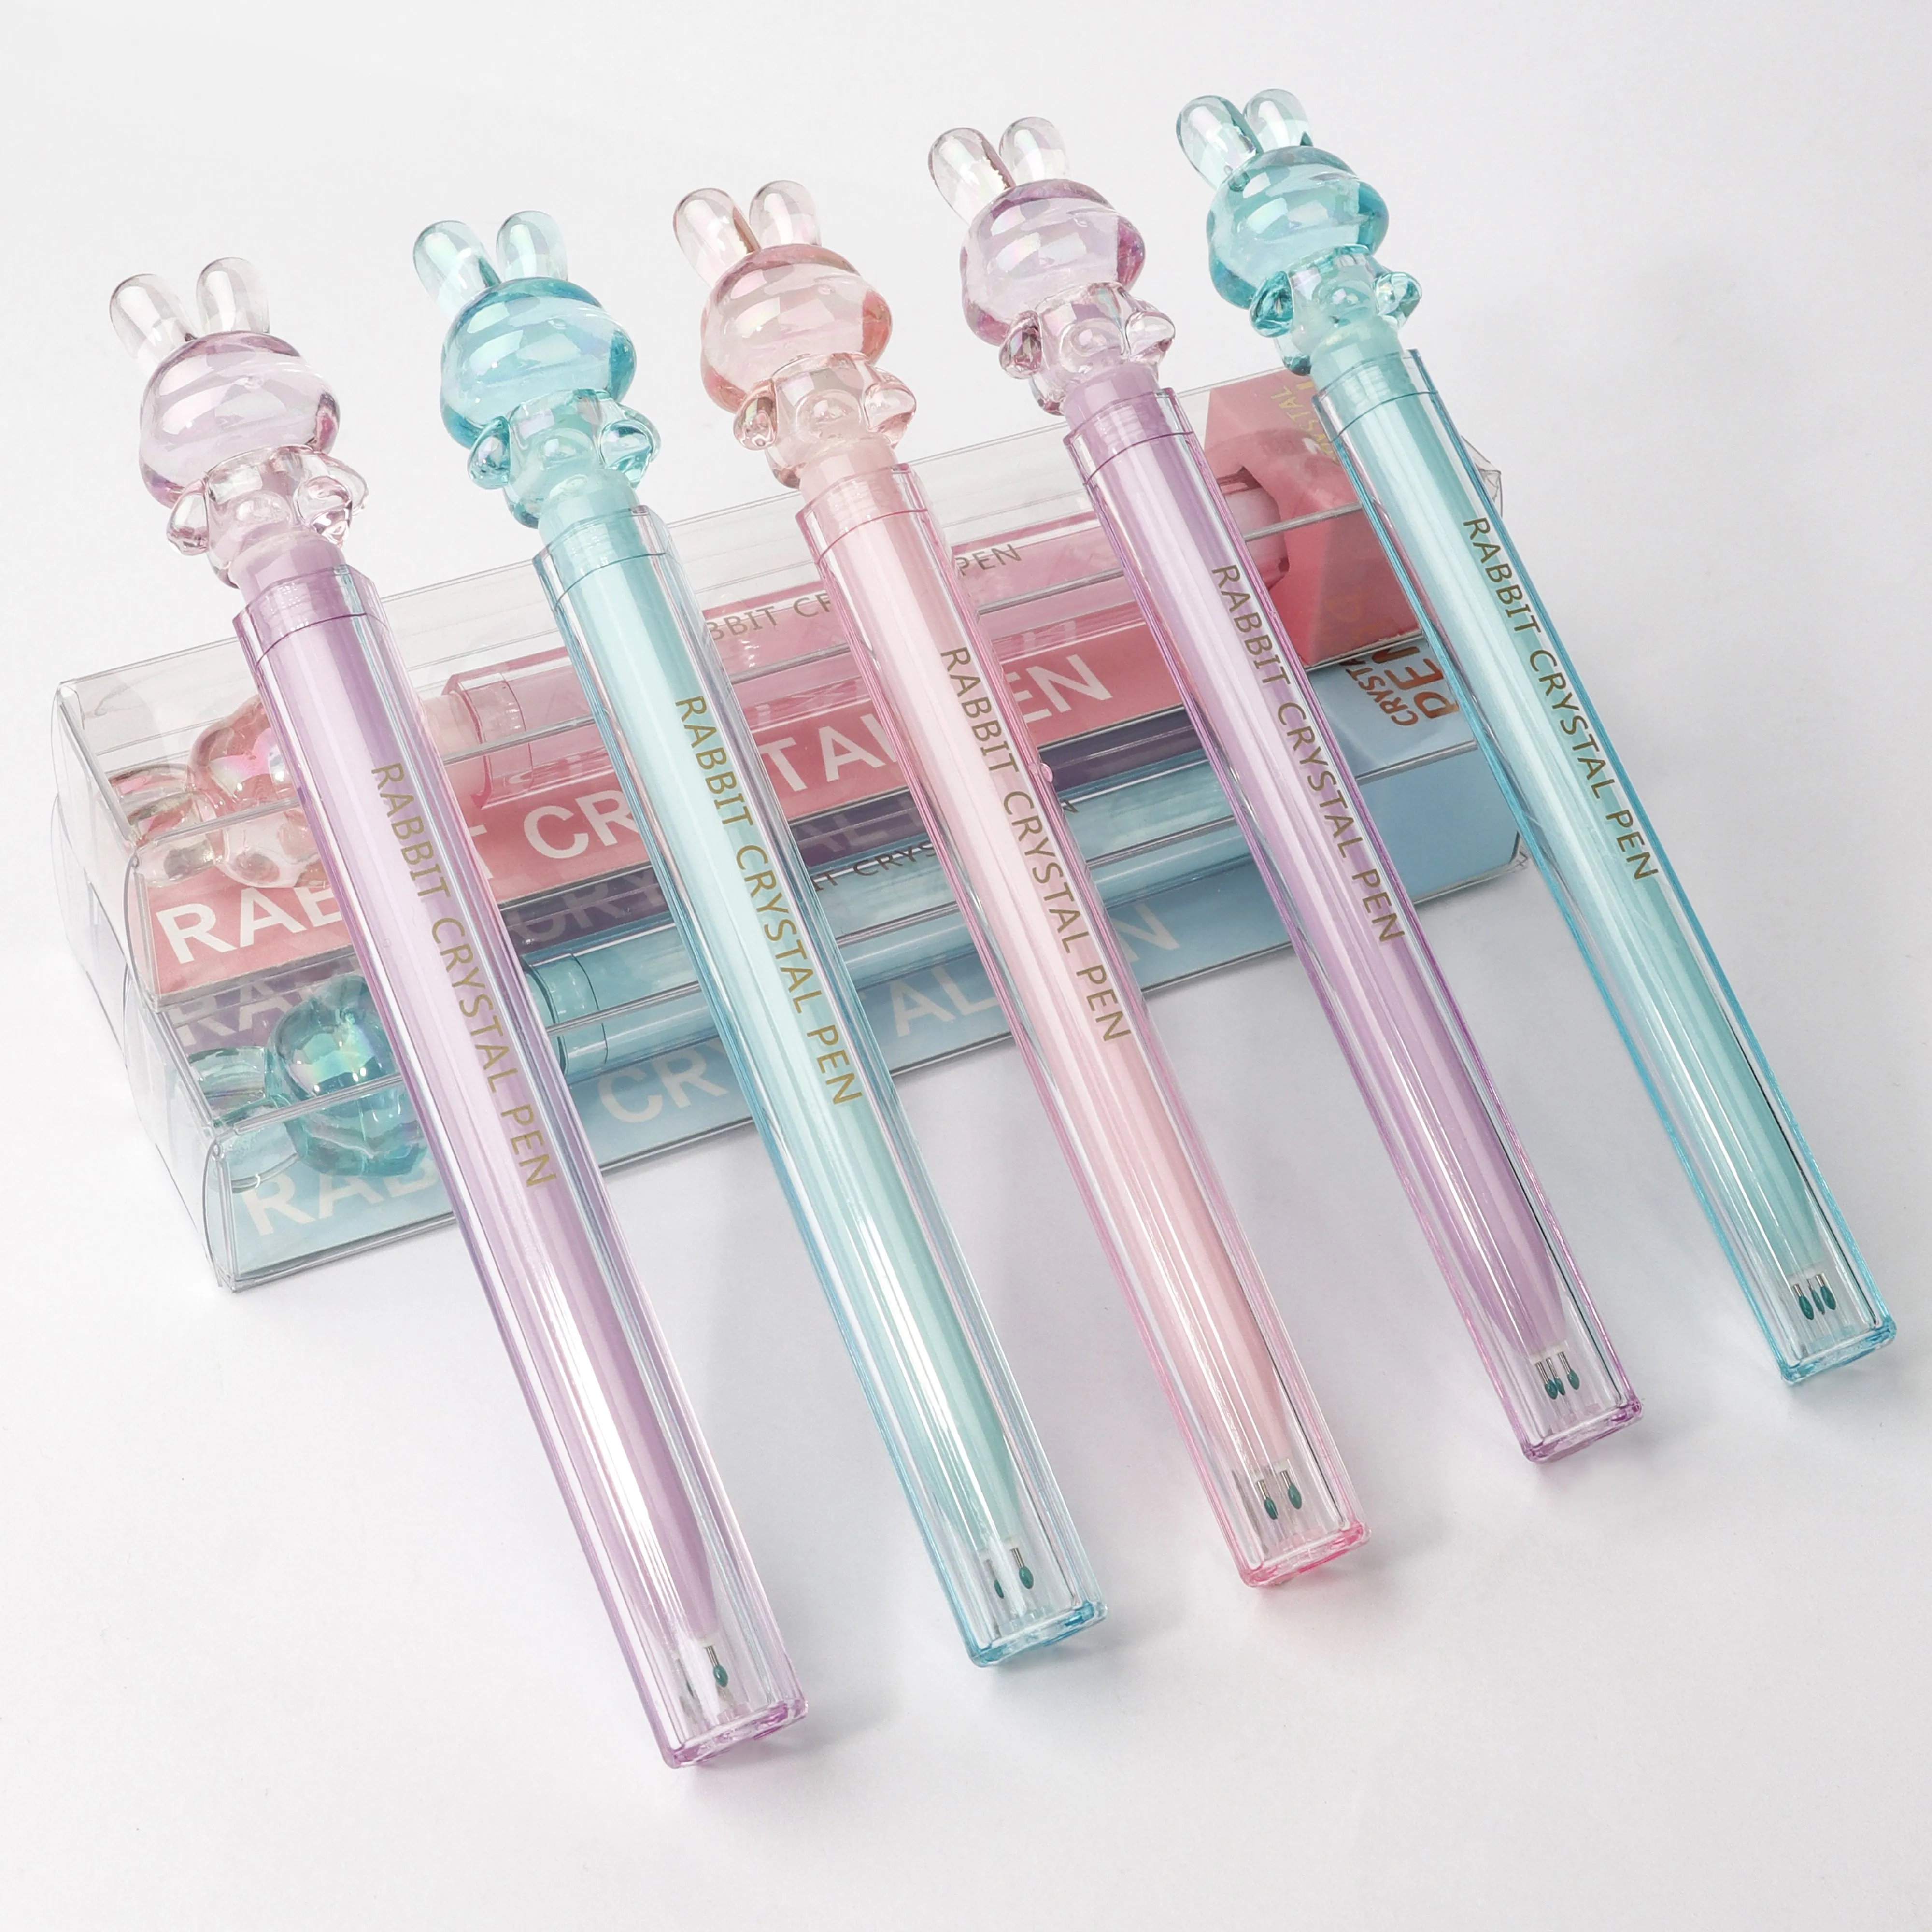 최신 판매 선전용 아이 중립 펜 귀여운 동물성 분홍색 토끼 모양 연약한 실리콘고무 젤 잉크 펜